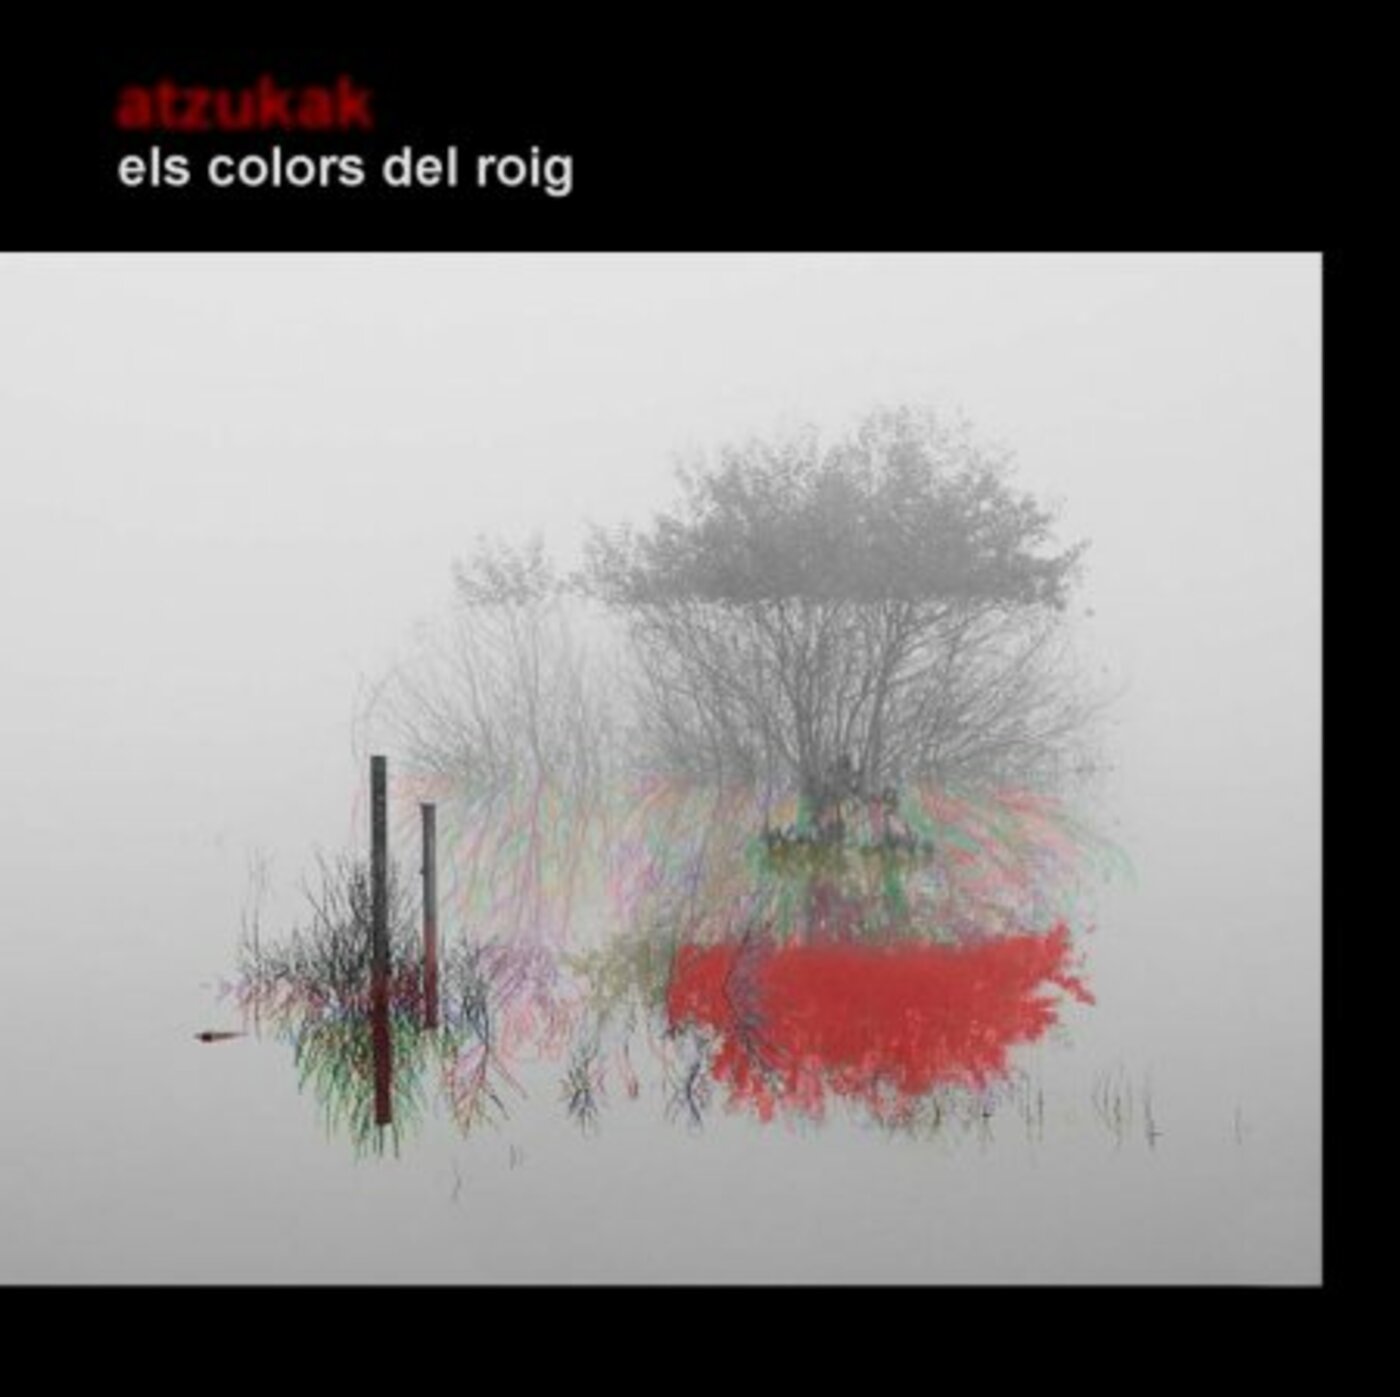 Atzukak - Els colors del roig | musica en valencià